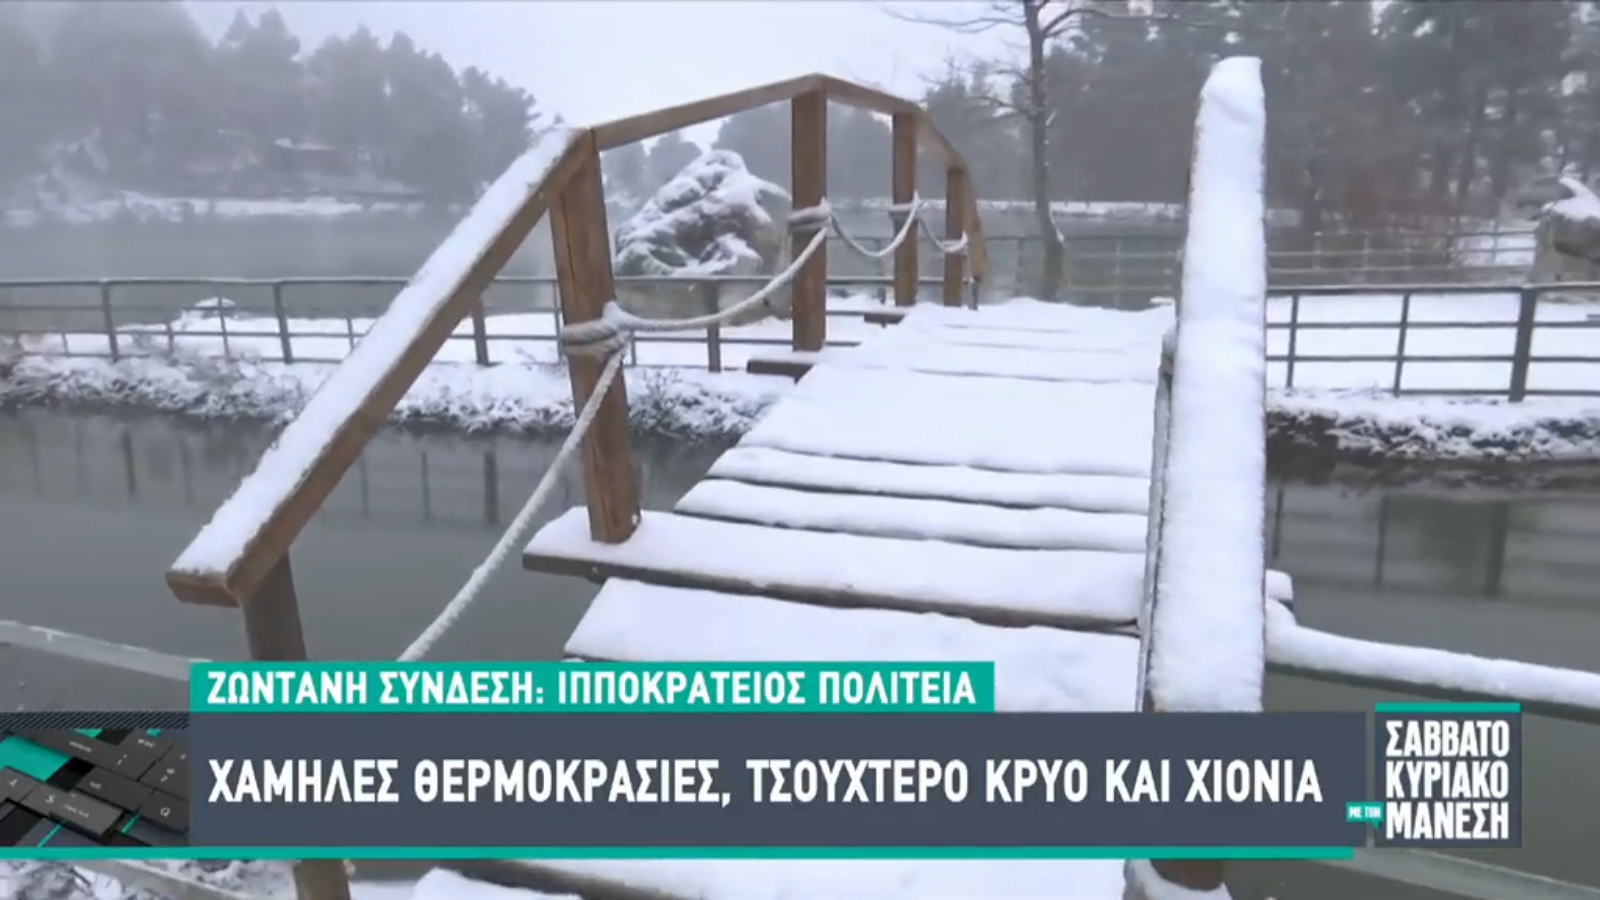 Η επική ατάκα Μάνεση σε ρεπόρτερ στα χιόνια: «Μην ανέβεις στη γέφυρα, θα σε παίξουν οι “Ράδιο Αρβύλα”»